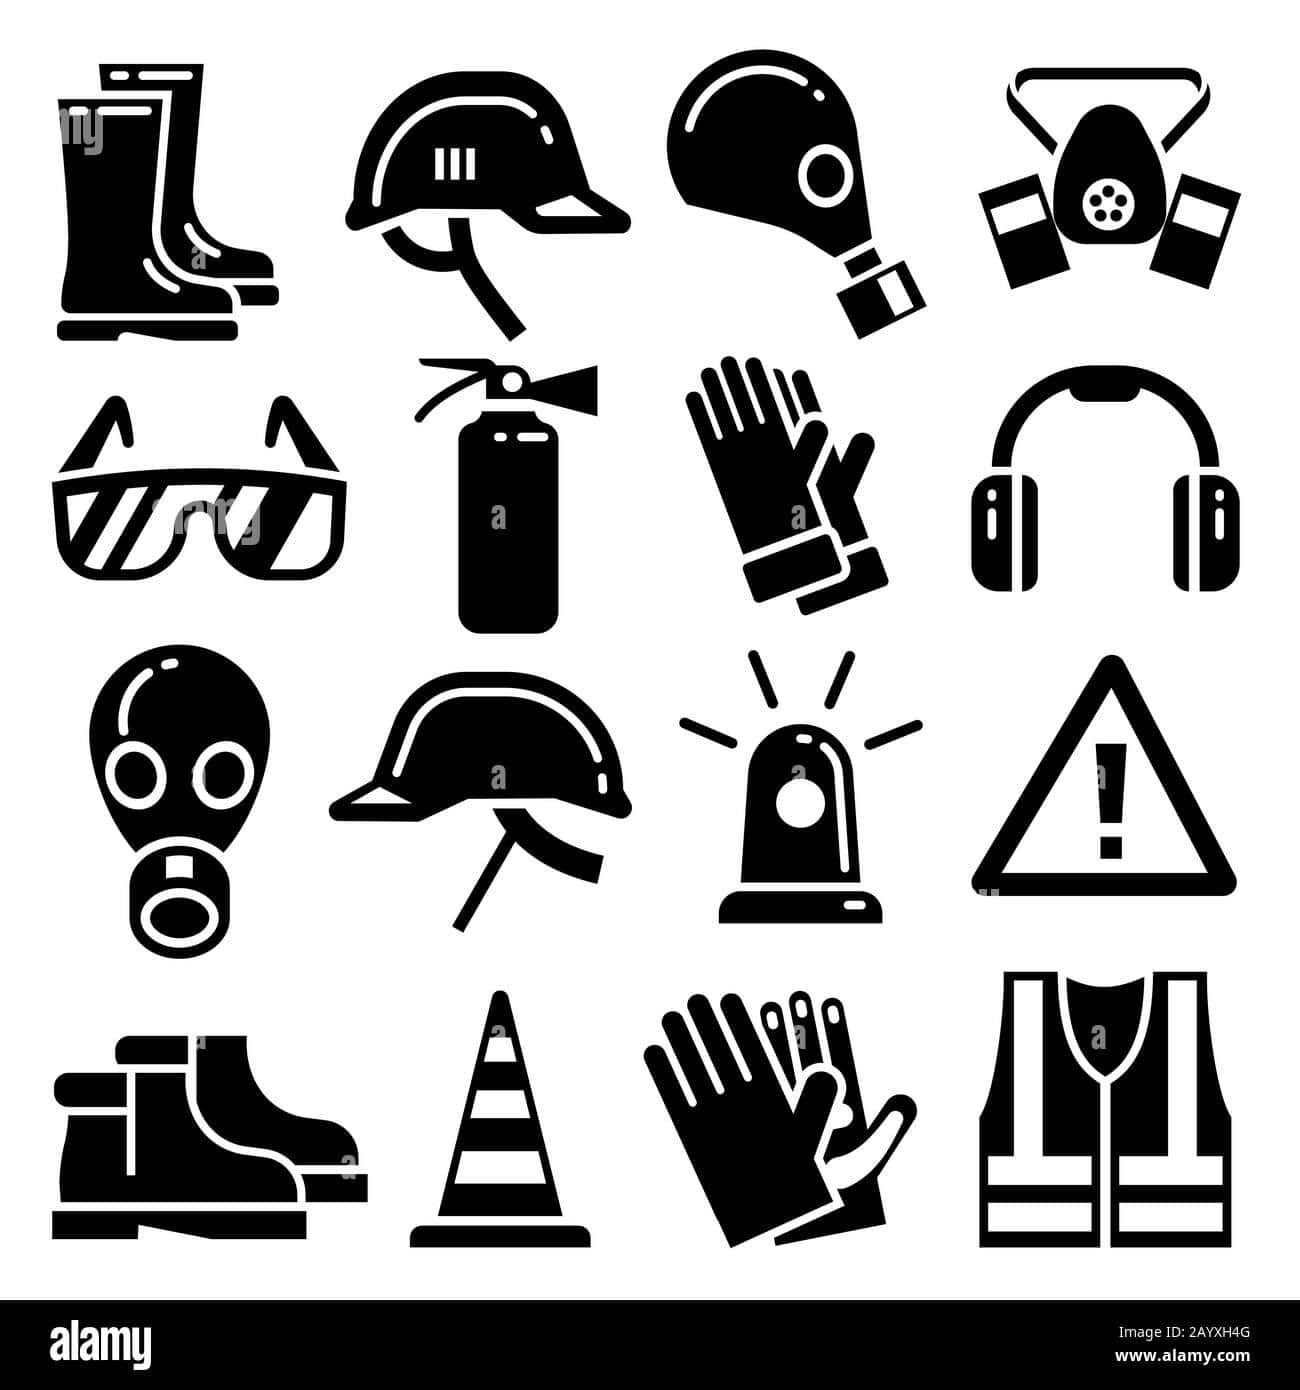 Safety Icons Set - Stock Image